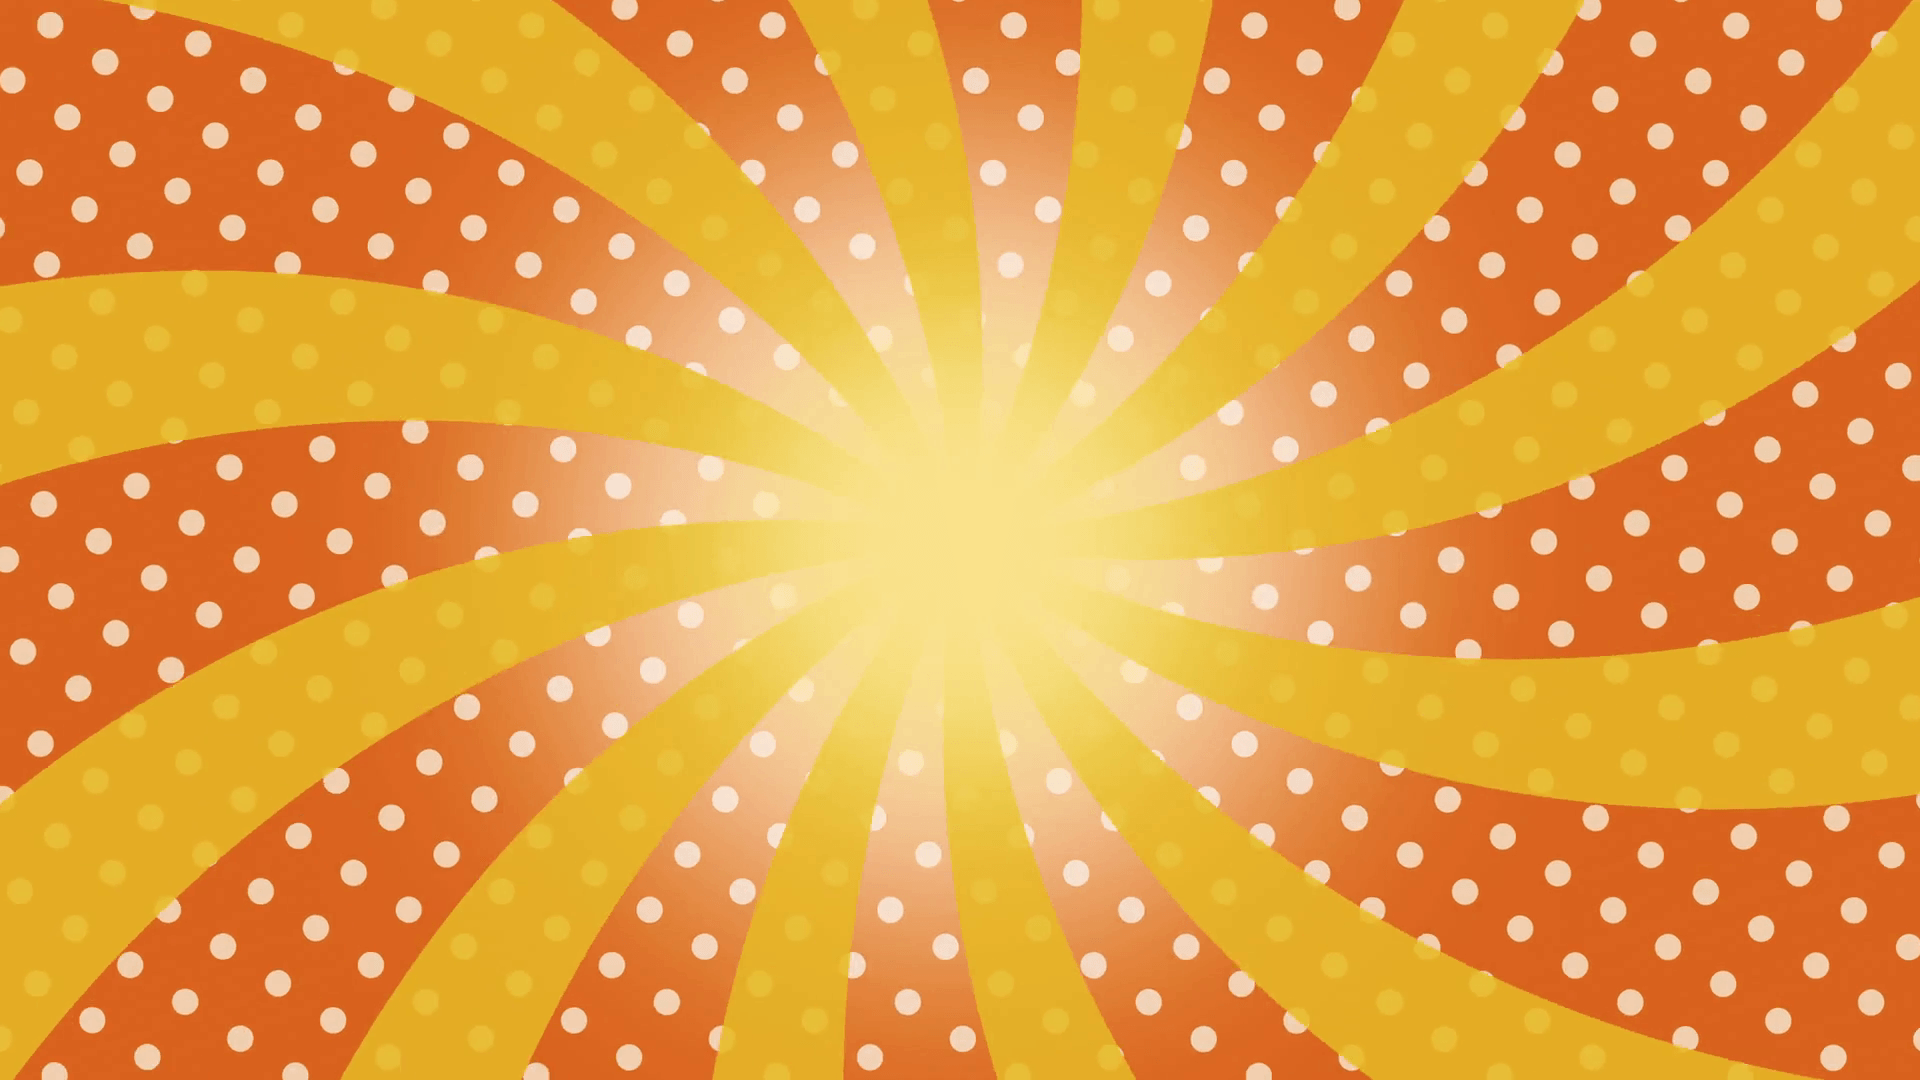 Yellow Twisted Sunburst rotating over orange background With white